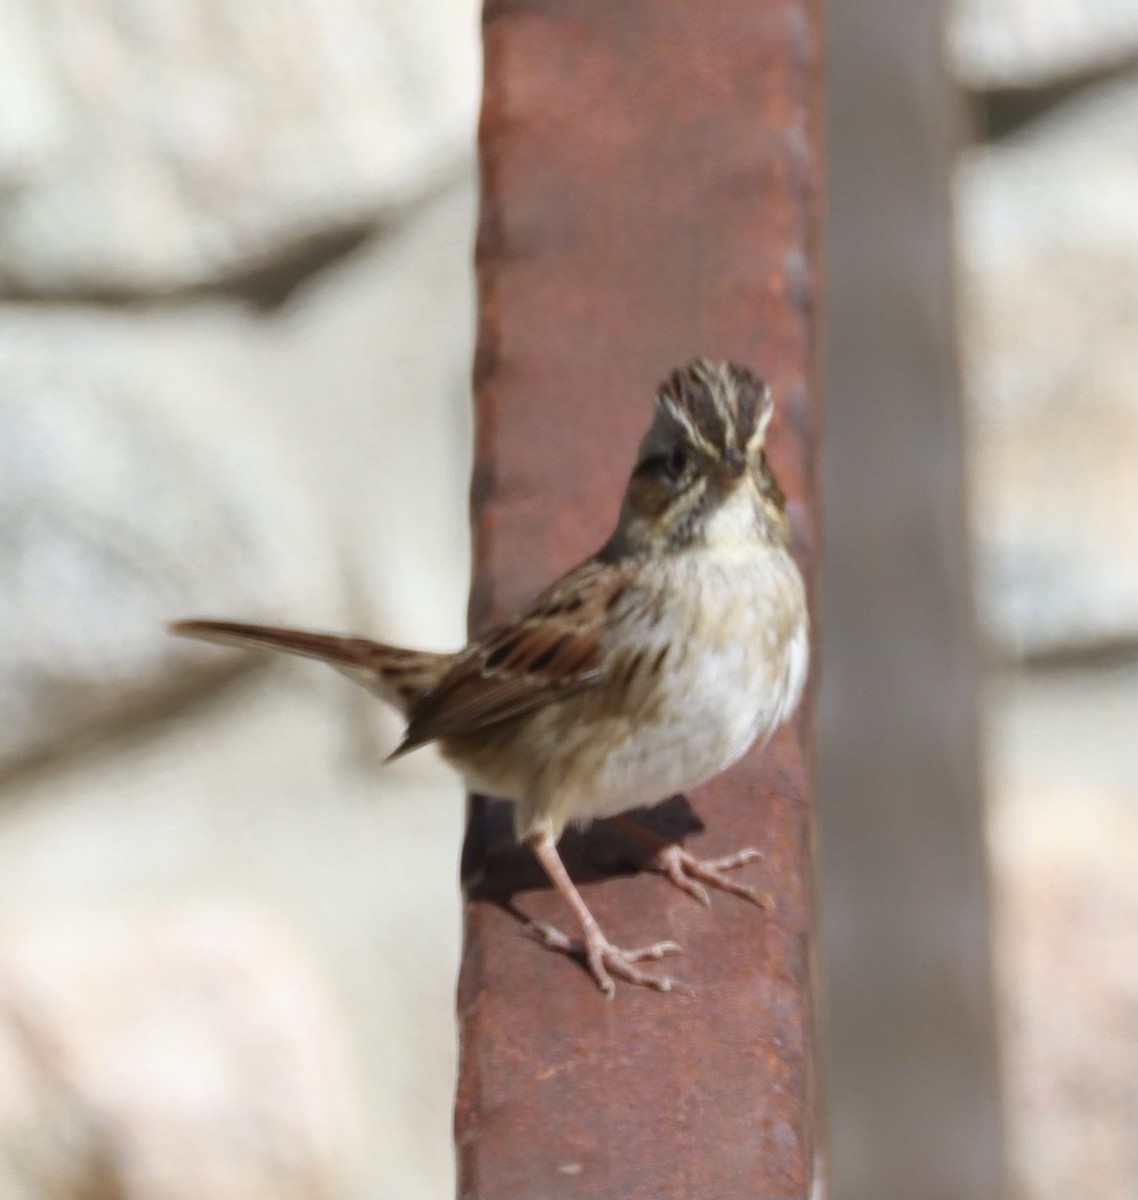 Swamp Sparrow - Brenda Dunham